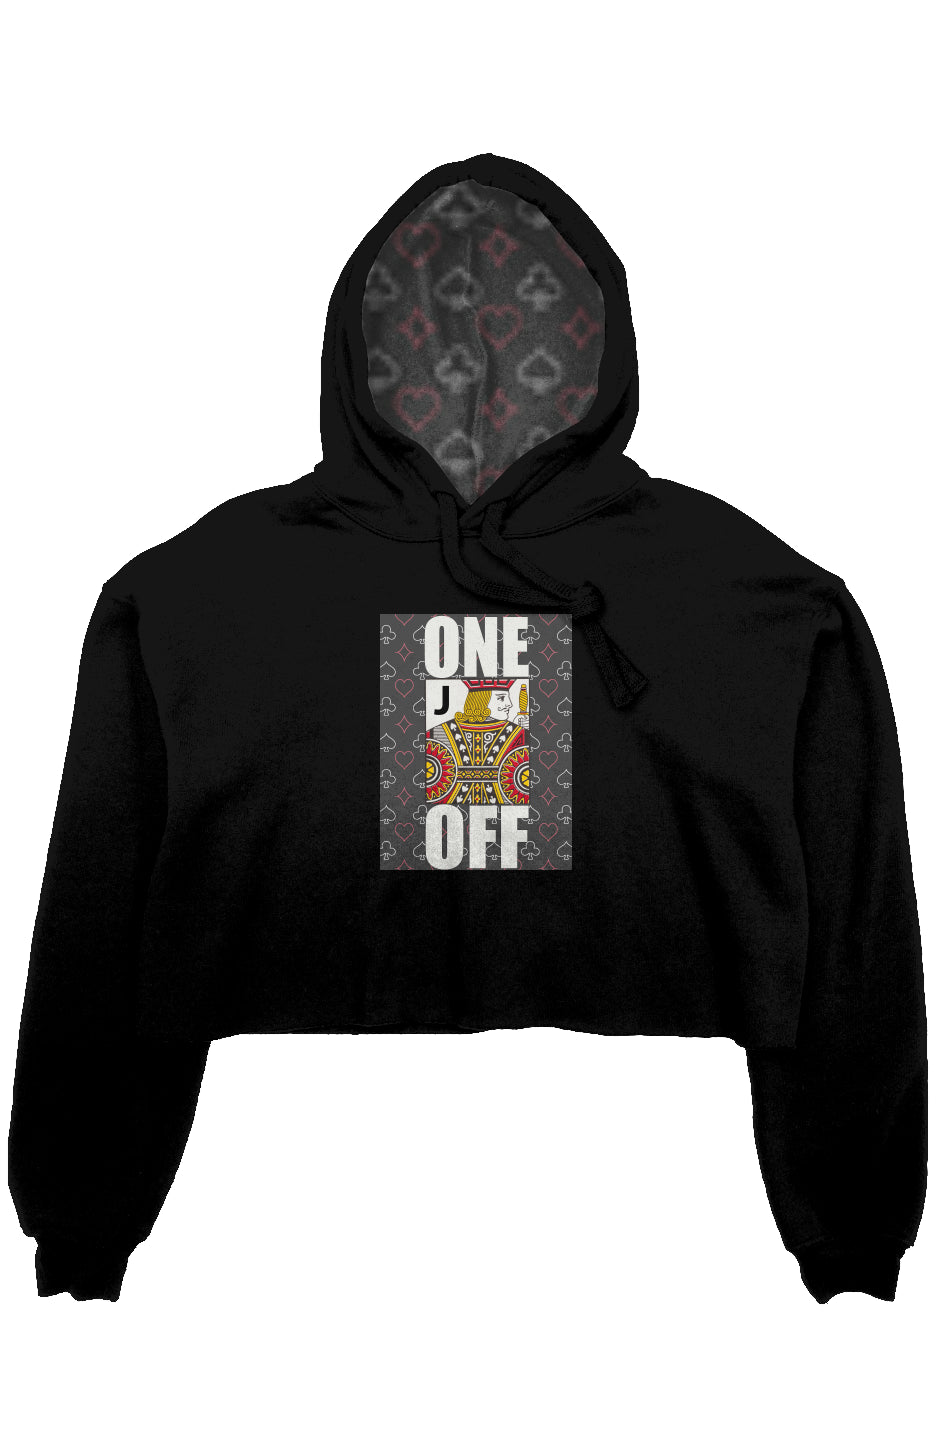 One Jack Off crop fleece hoodie